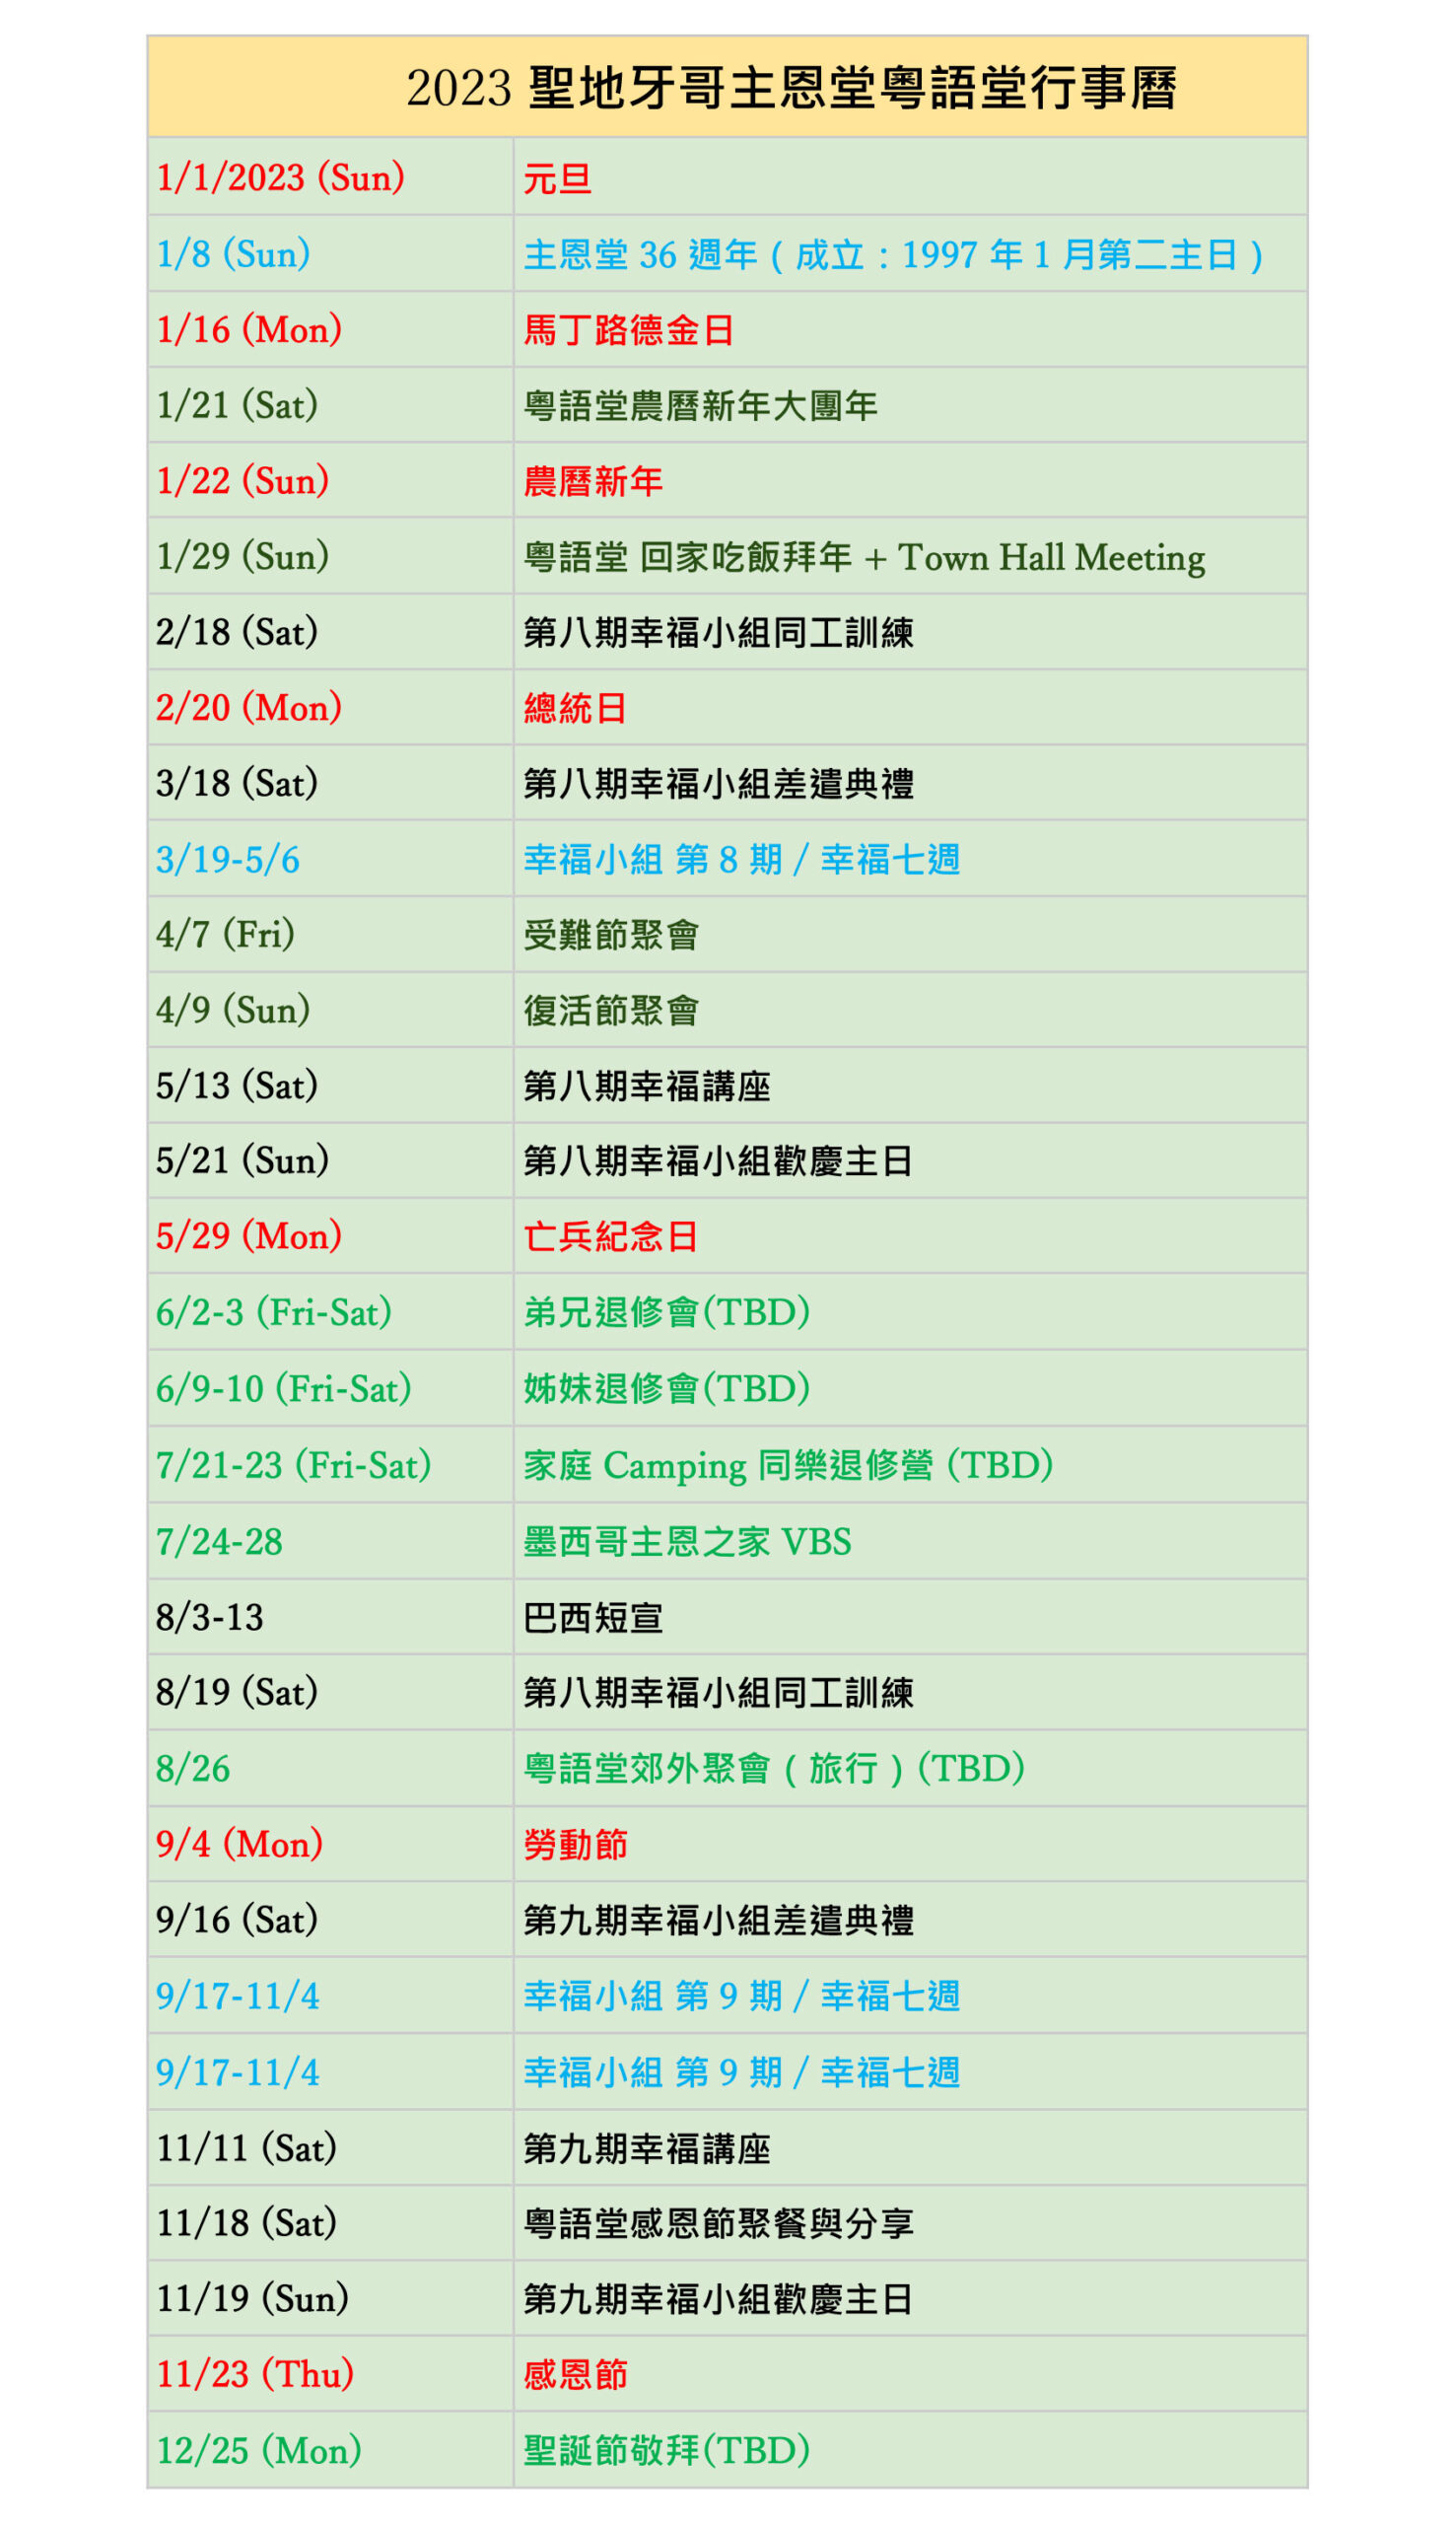 Calendar CBCSD Cantonese